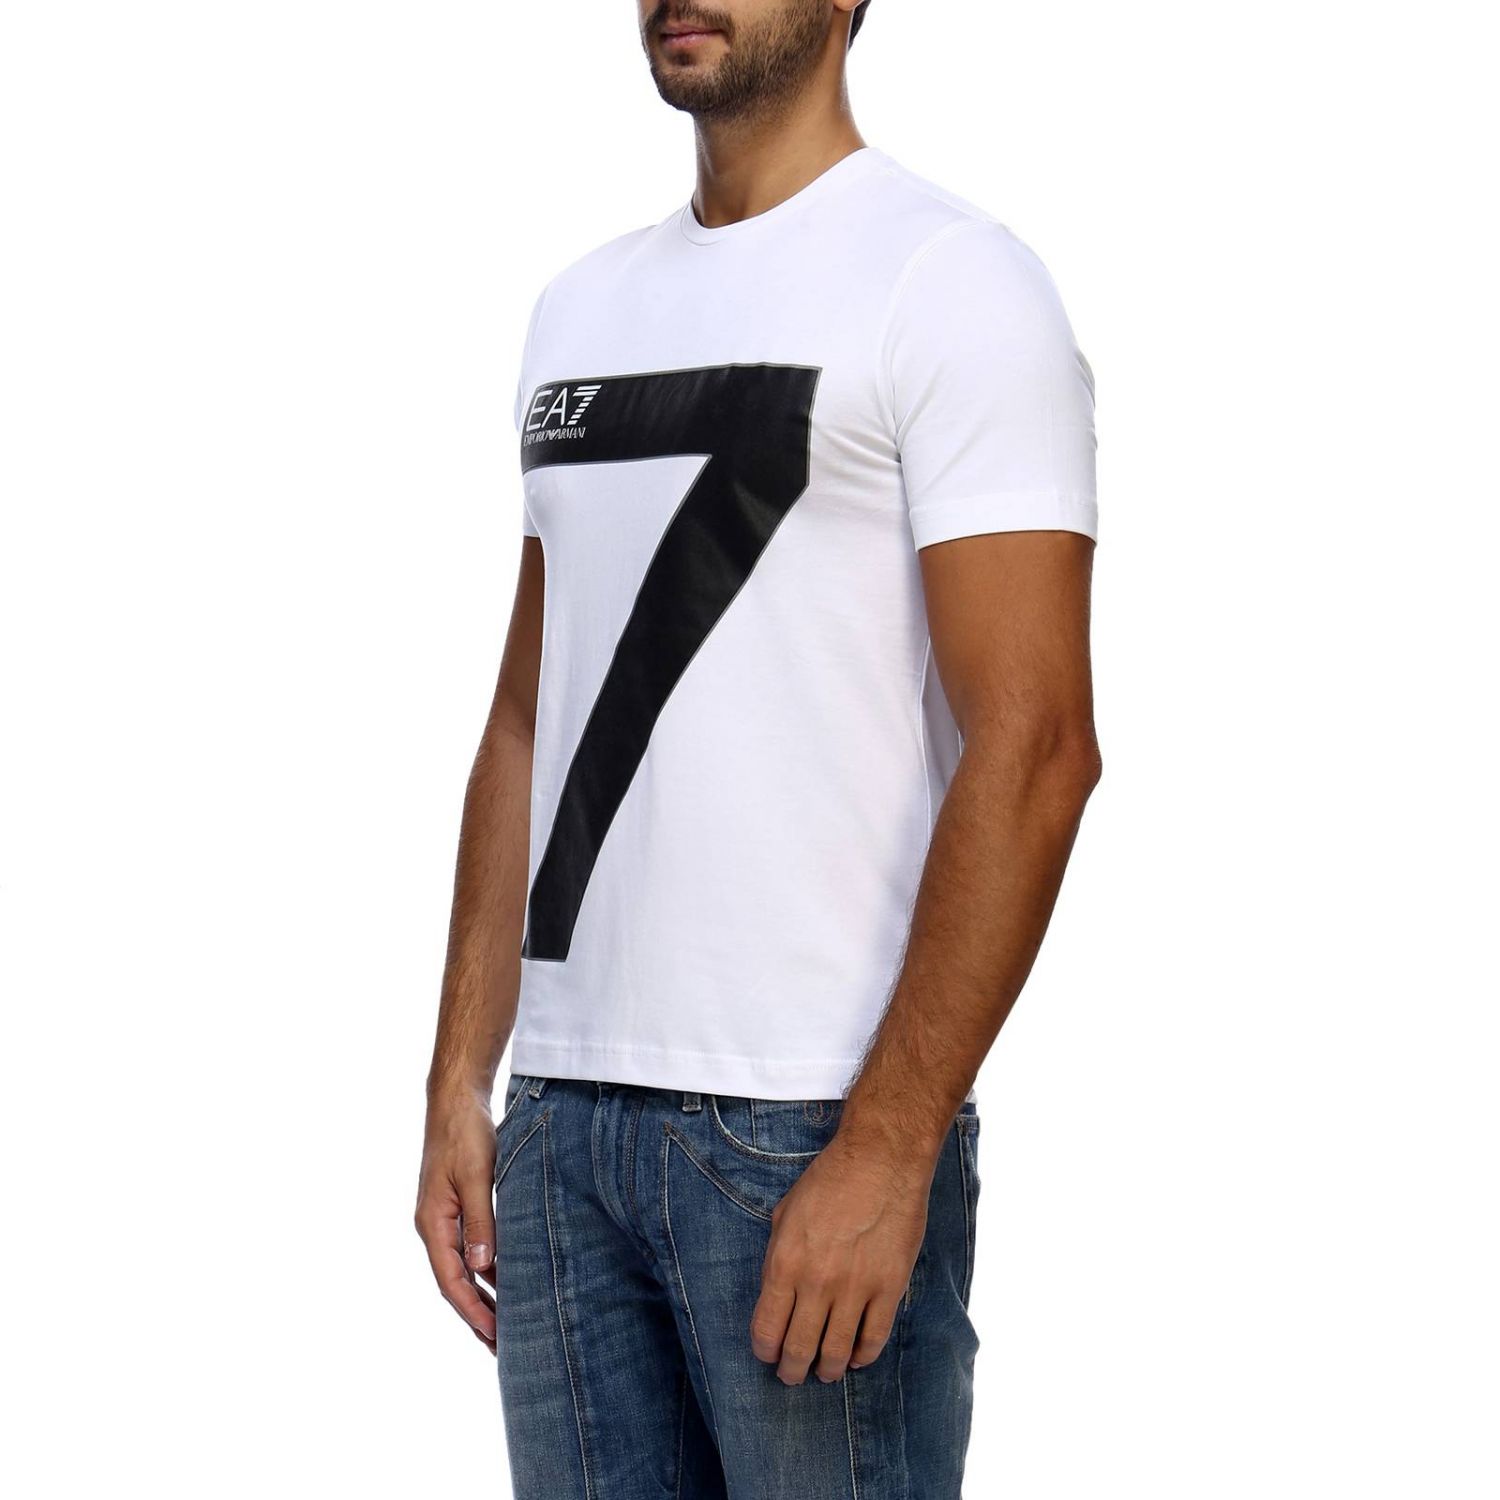 Ea7 Outlet: T-shirt men | T-Shirt Ea7 Men White | T-Shirt Ea7 6ZPT31